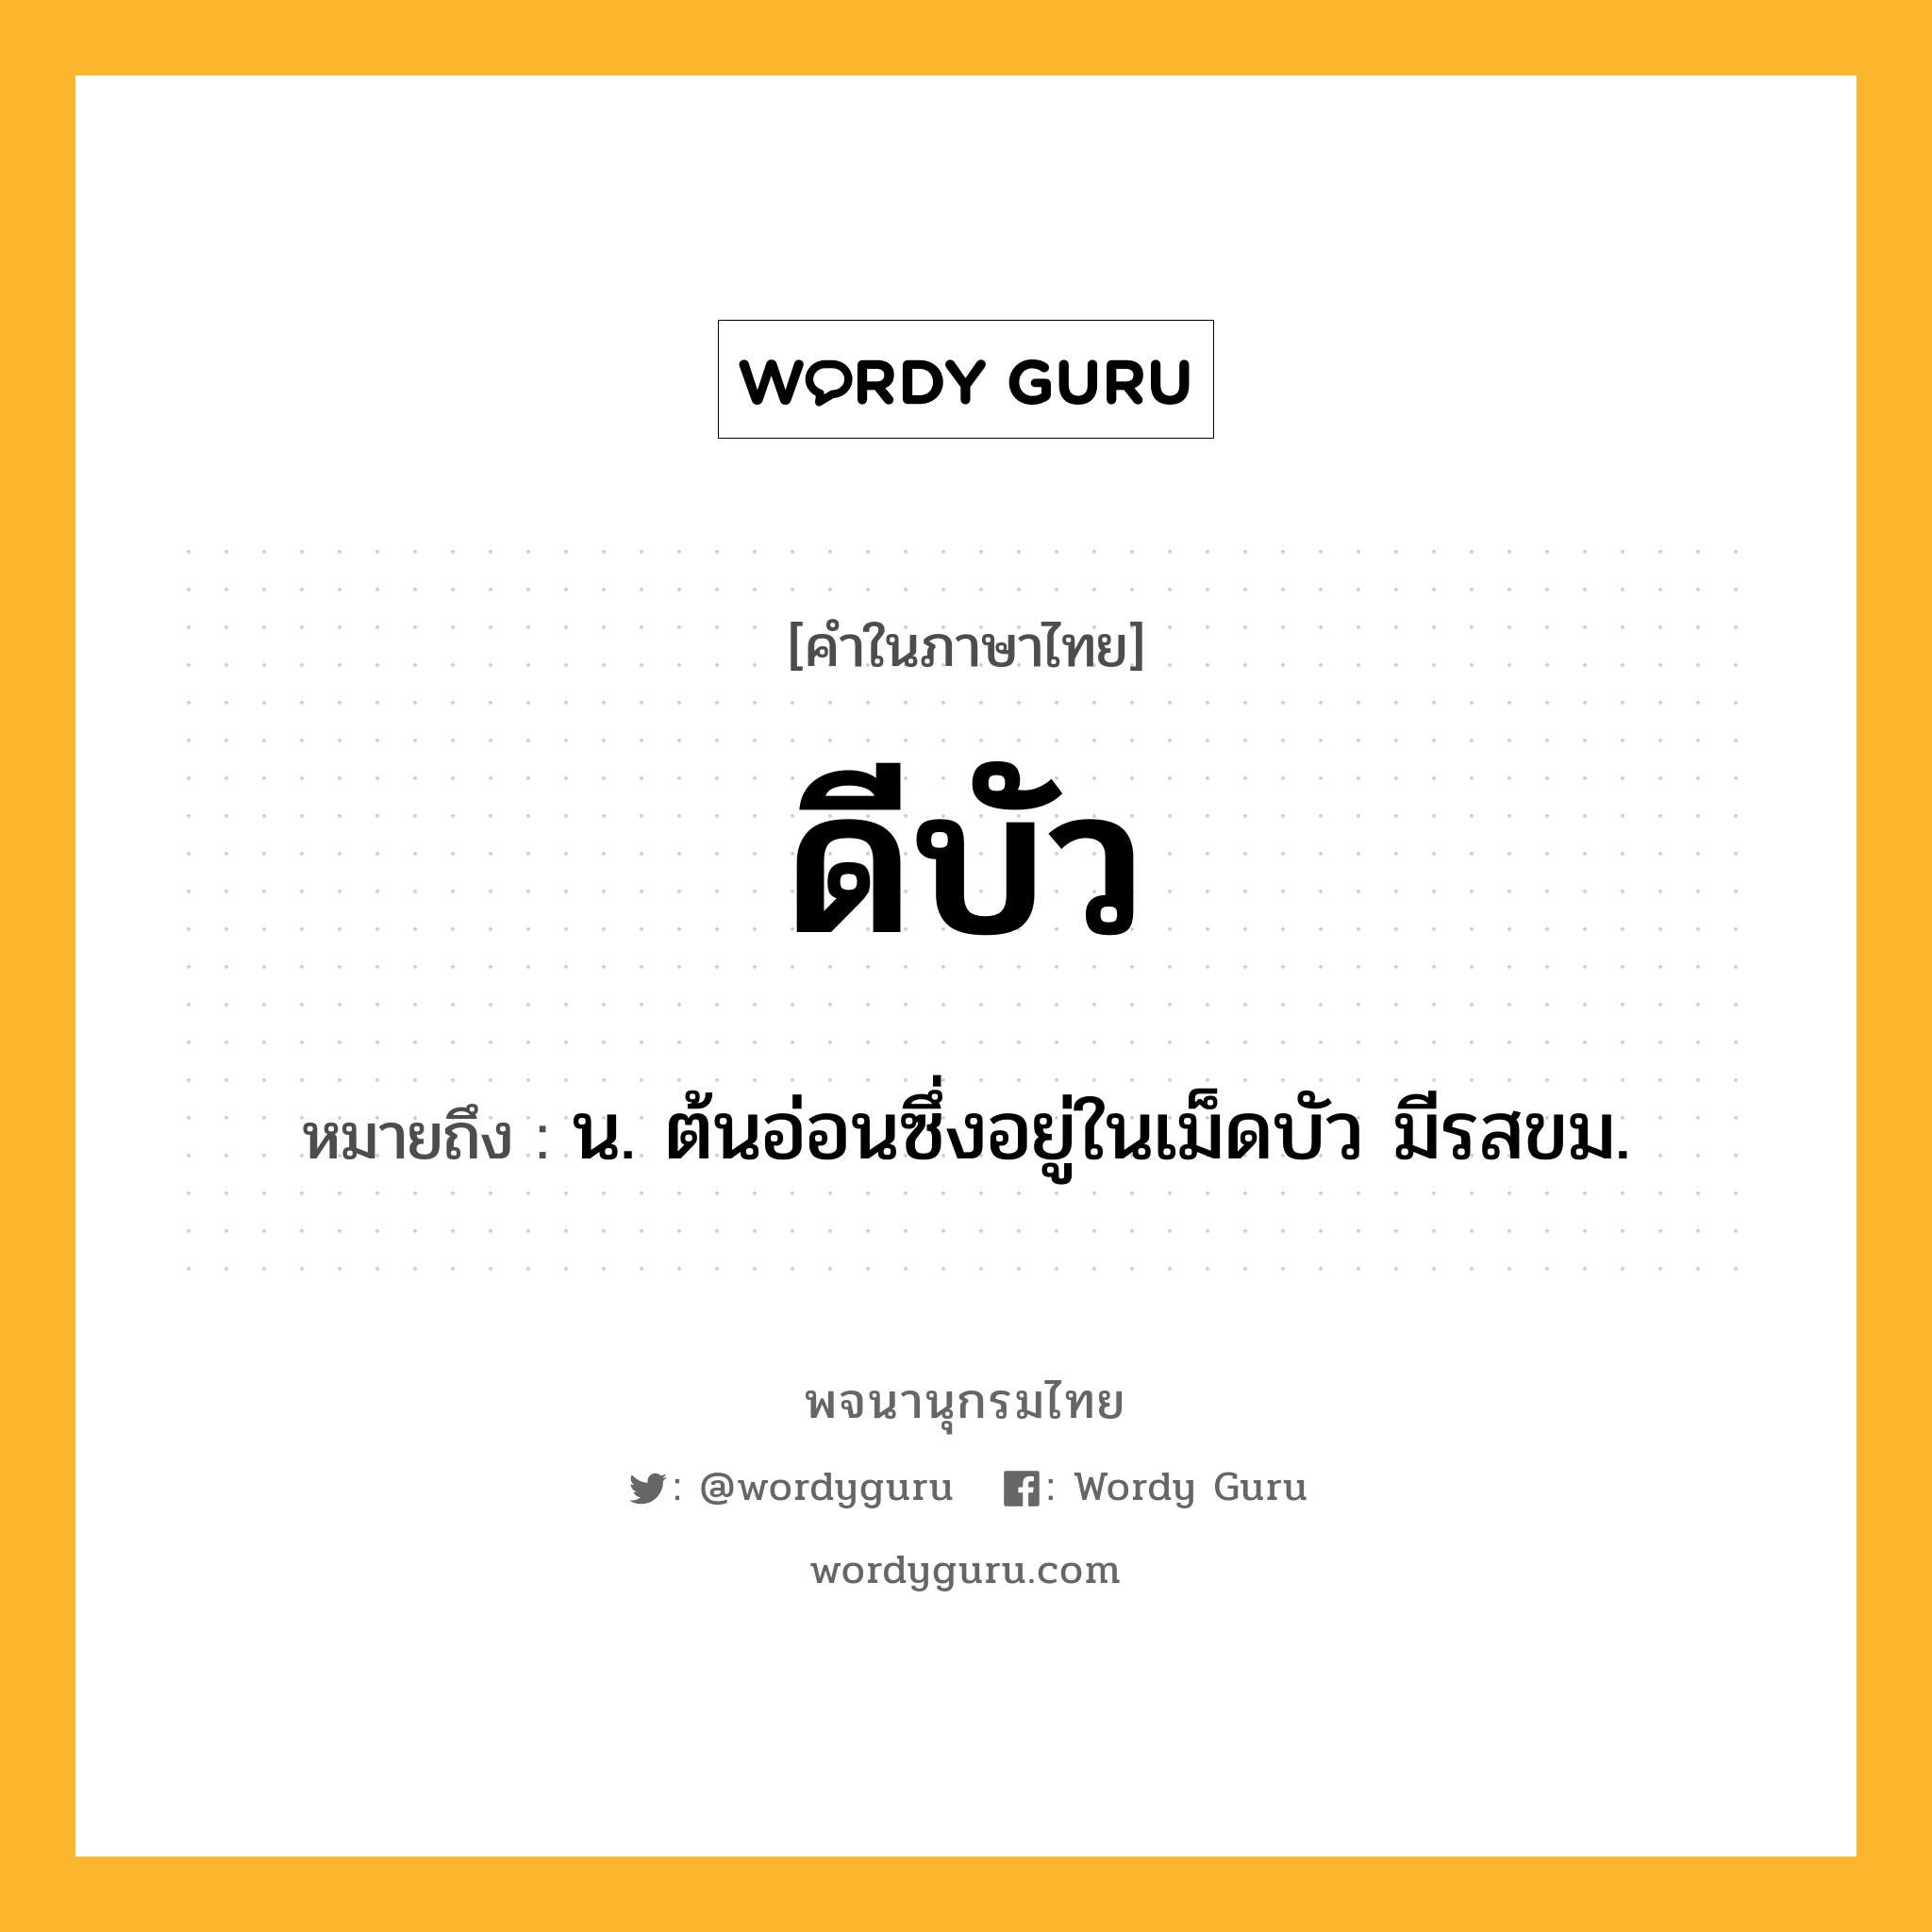 ดีบัว ความหมาย หมายถึงอะไร?, คำในภาษาไทย ดีบัว หมายถึง น. ต้นอ่อนซึ่งอยู่ในเม็ดบัว มีรสขม.